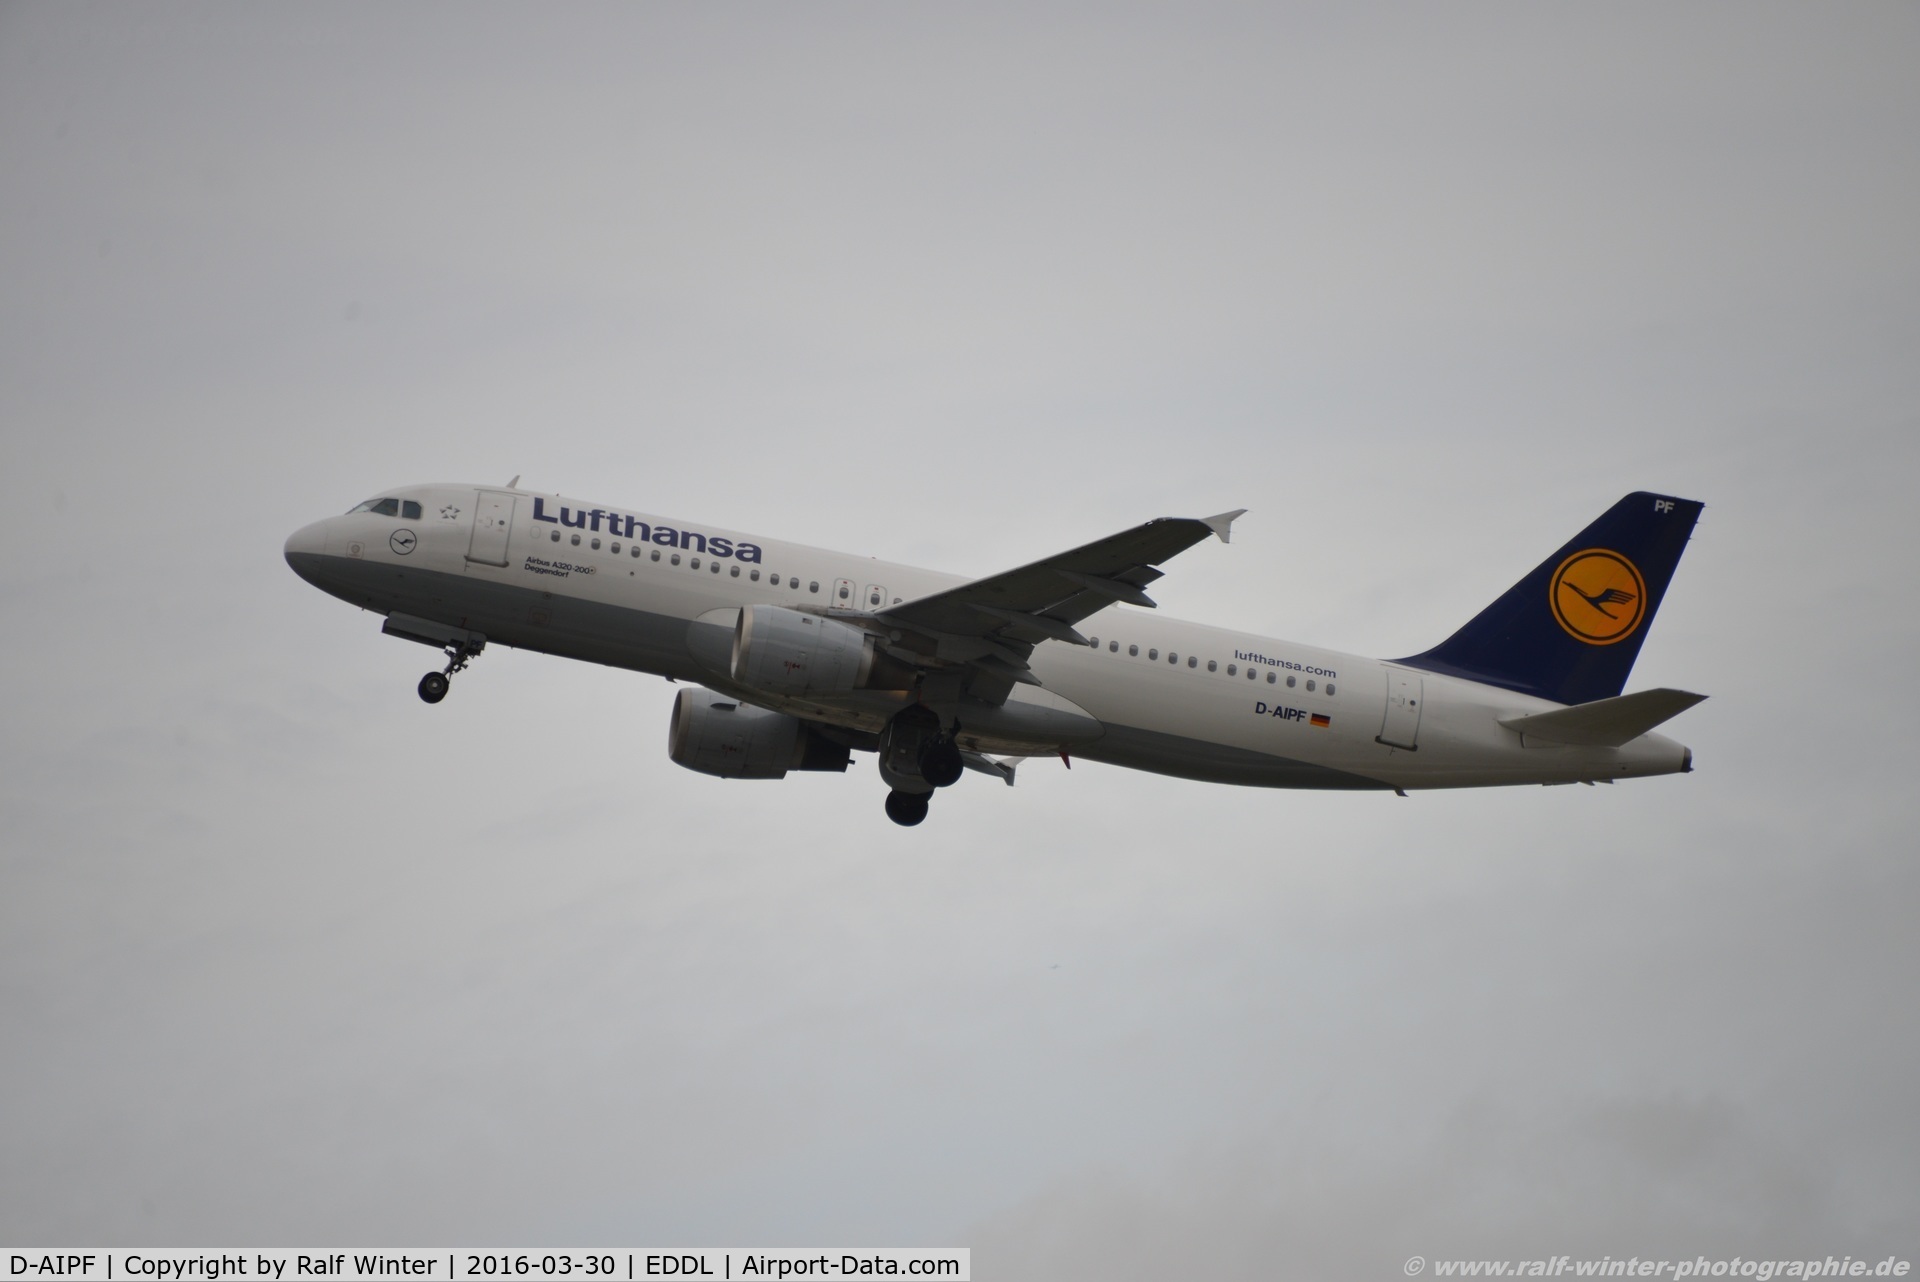 D-AIPF, 1989 Airbus A320-211 C/N 0083, Airbus A320-211 - LH DLH Lufthansa 'Deggendorf' - 83 - D-AIPF - 30.03.2016 - DUS